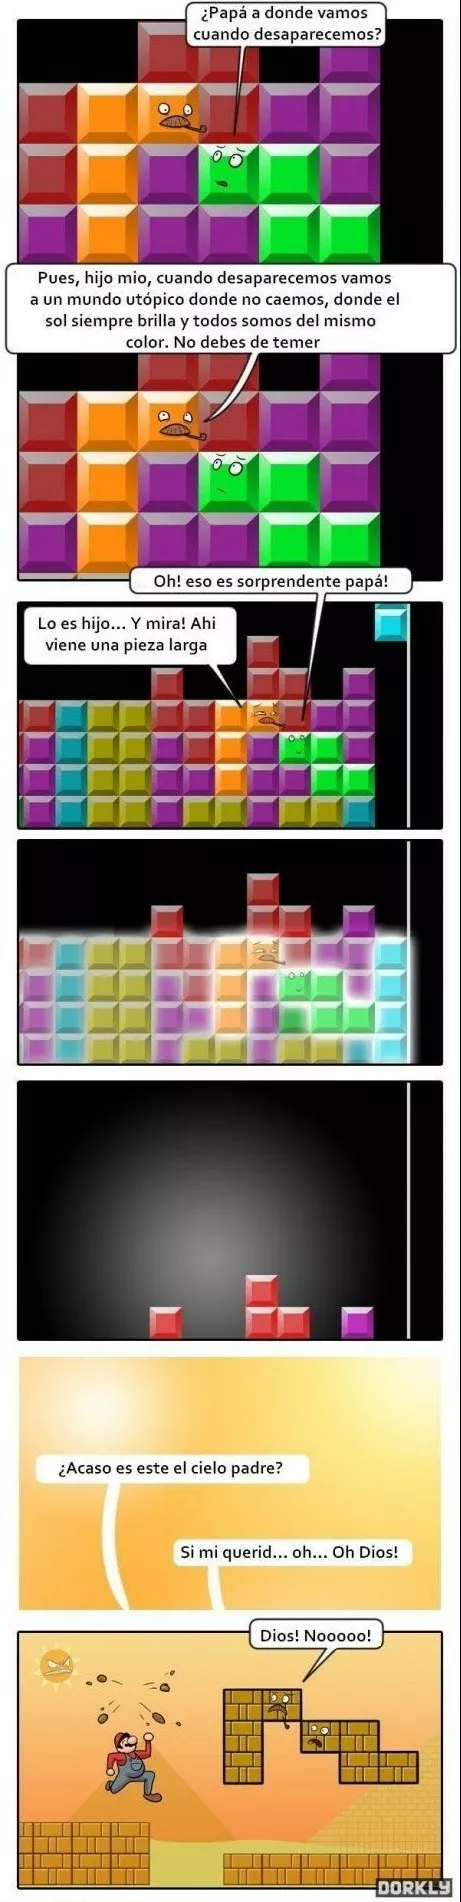 Que ocurre en el tetris?